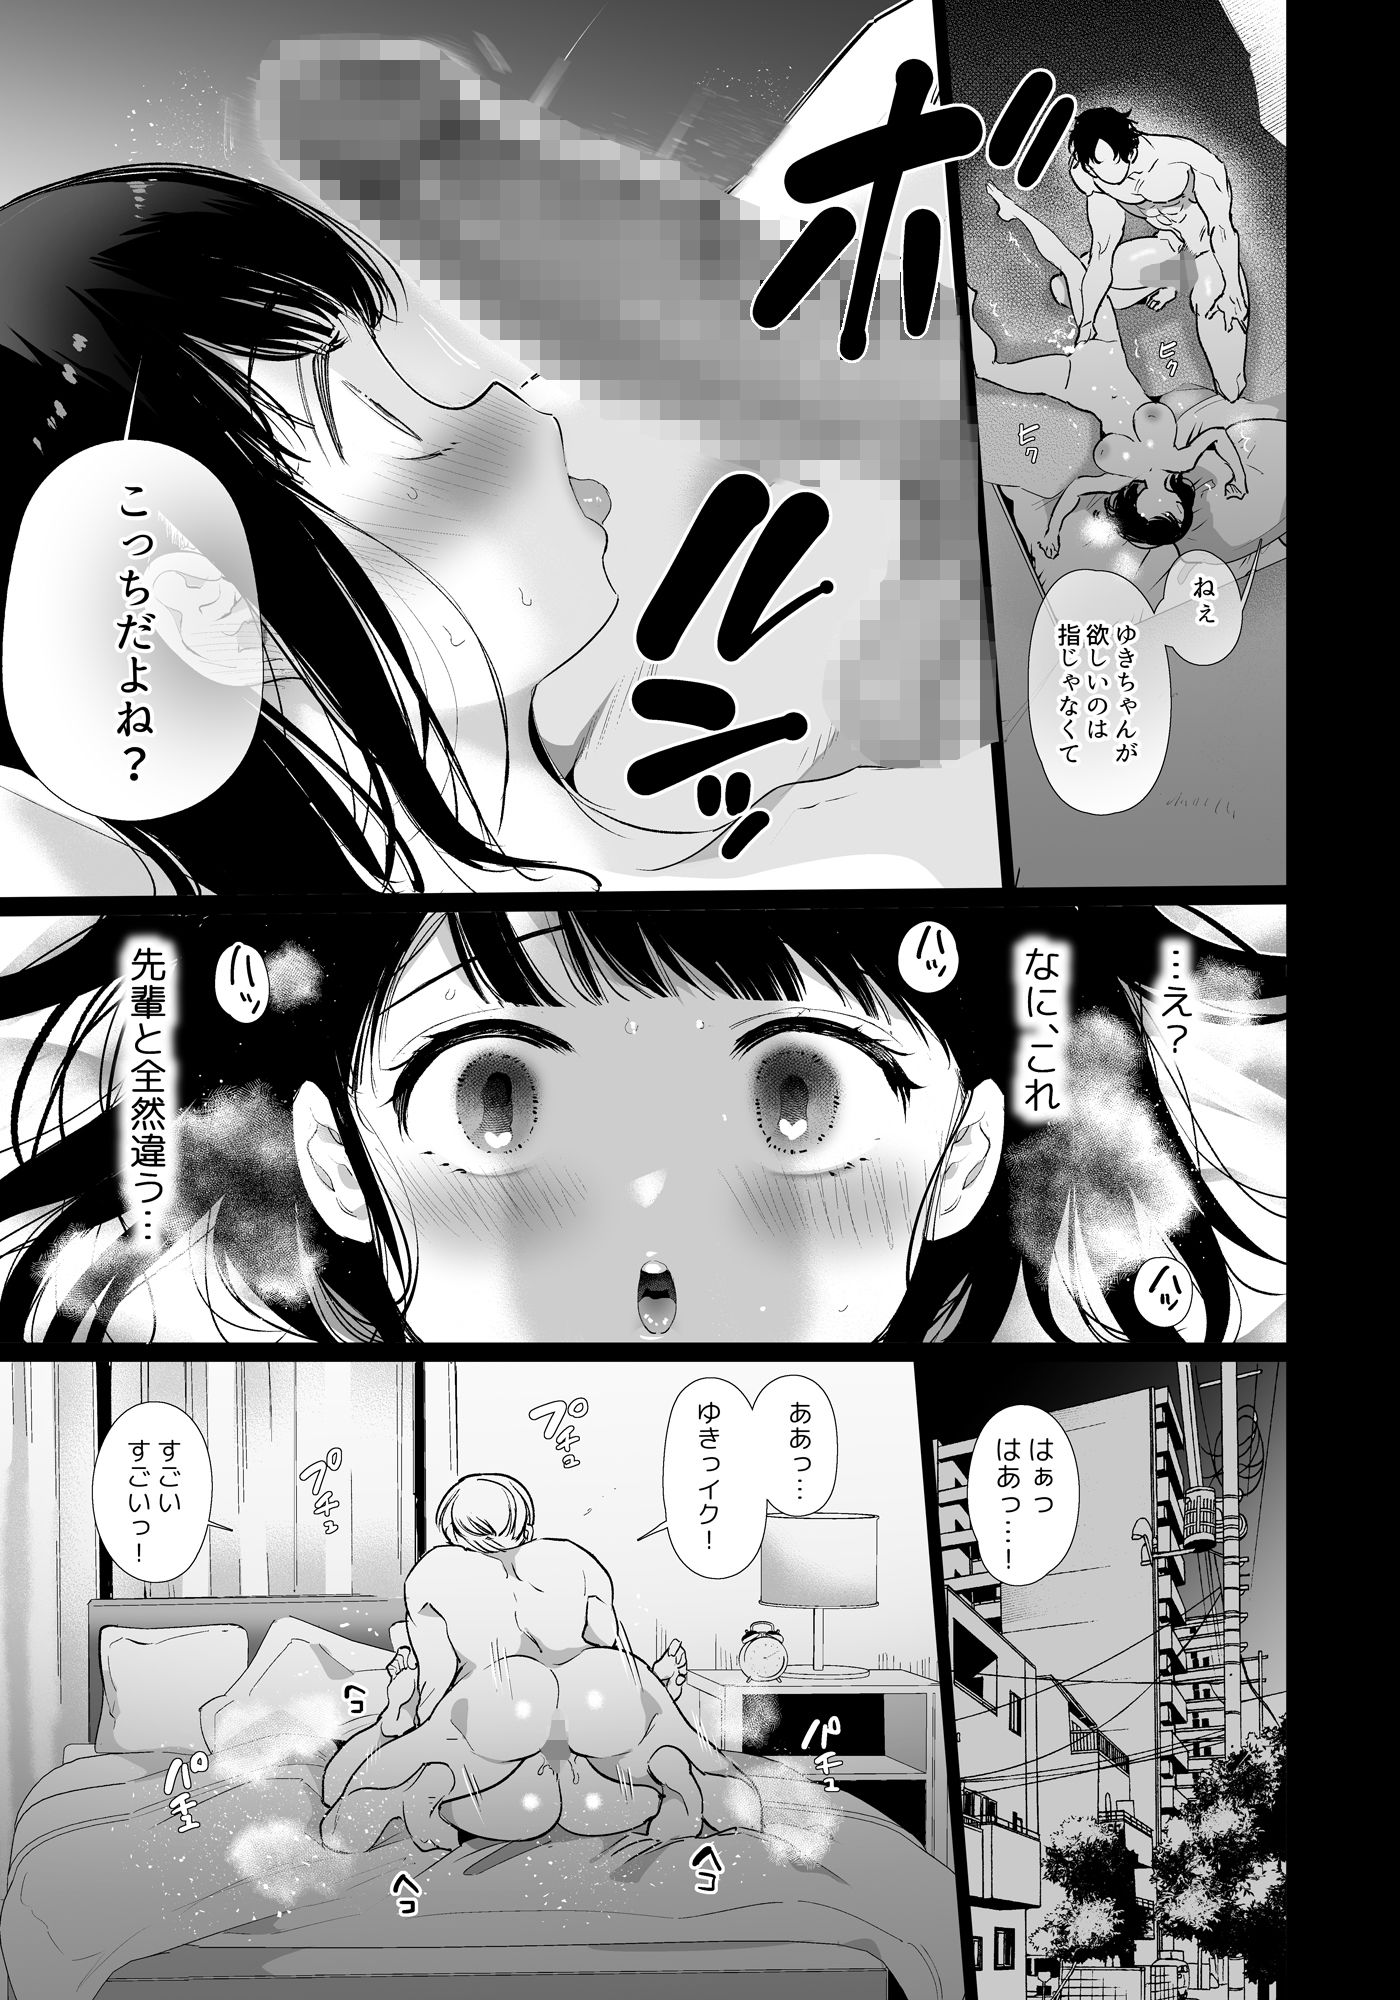 【同人コミック・エロ漫画】ゆきちゃんNTR 彼女がメスに堕ちるまで［Yatomomin］#8